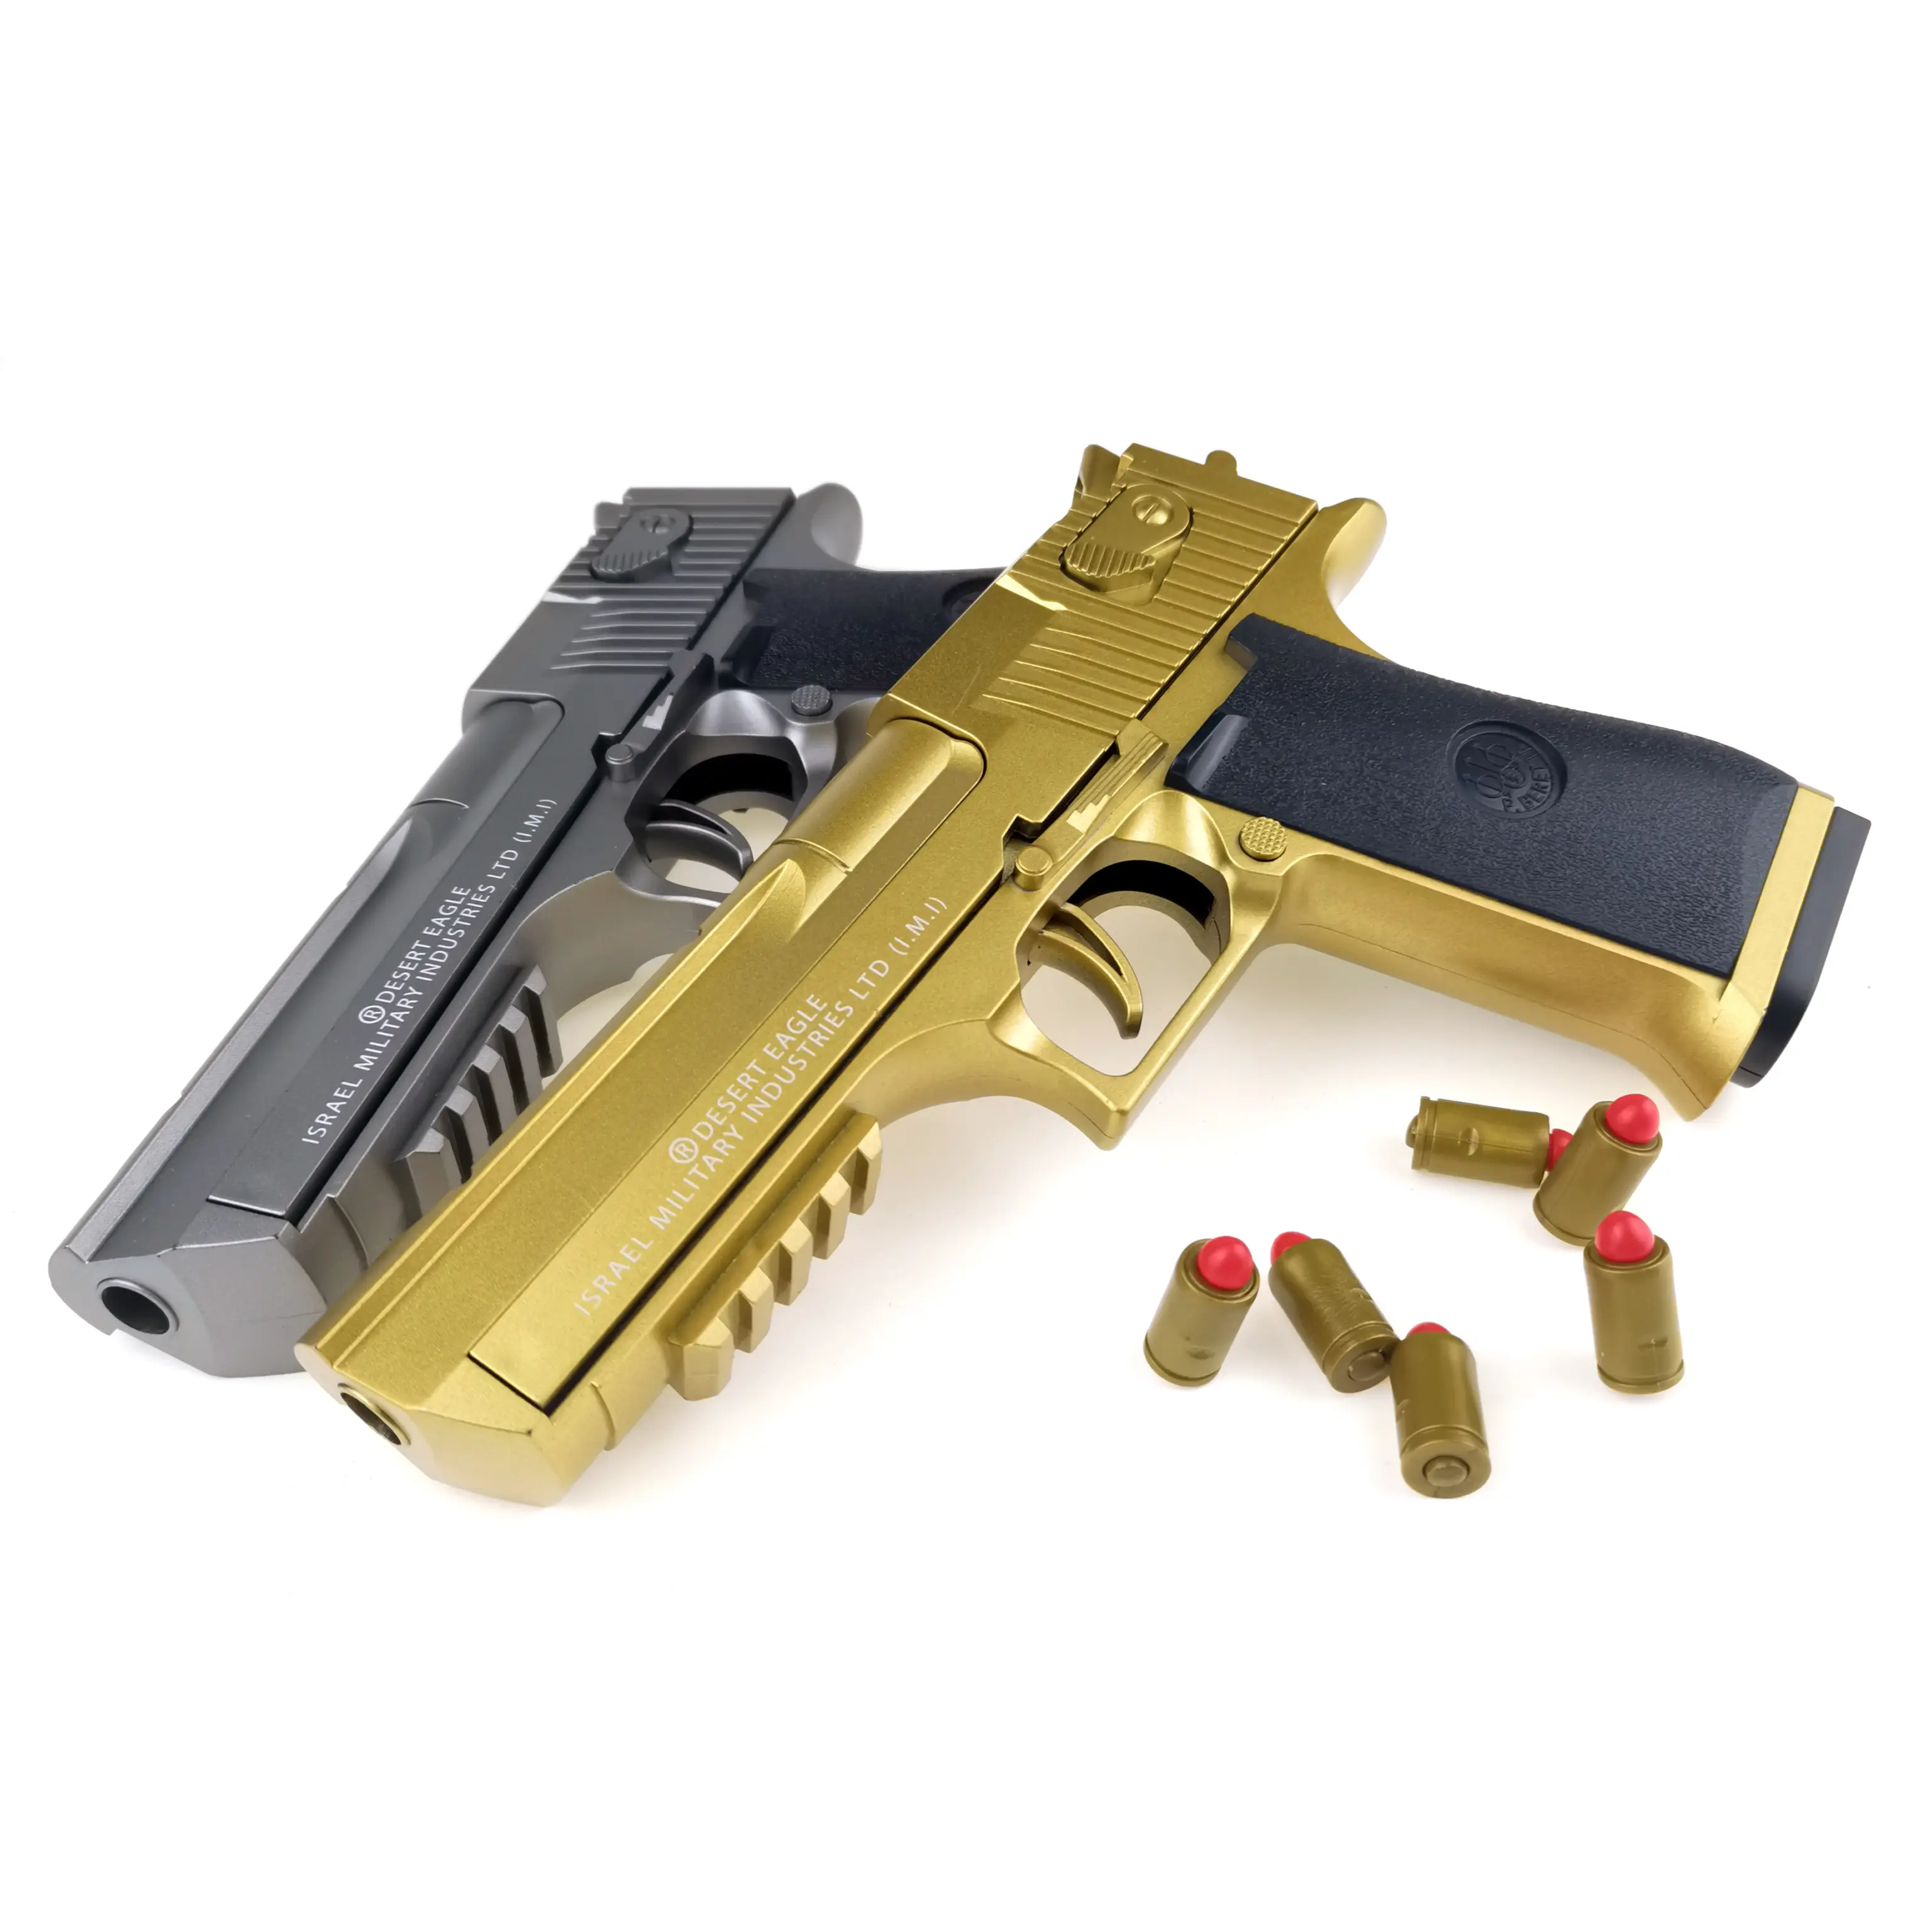 الأكثر مبيعًا للبيع بالجملة مسدس محمول Nerfs بندقية قذيفة بلاستيكية طرد لعبة بندقية للأطفال